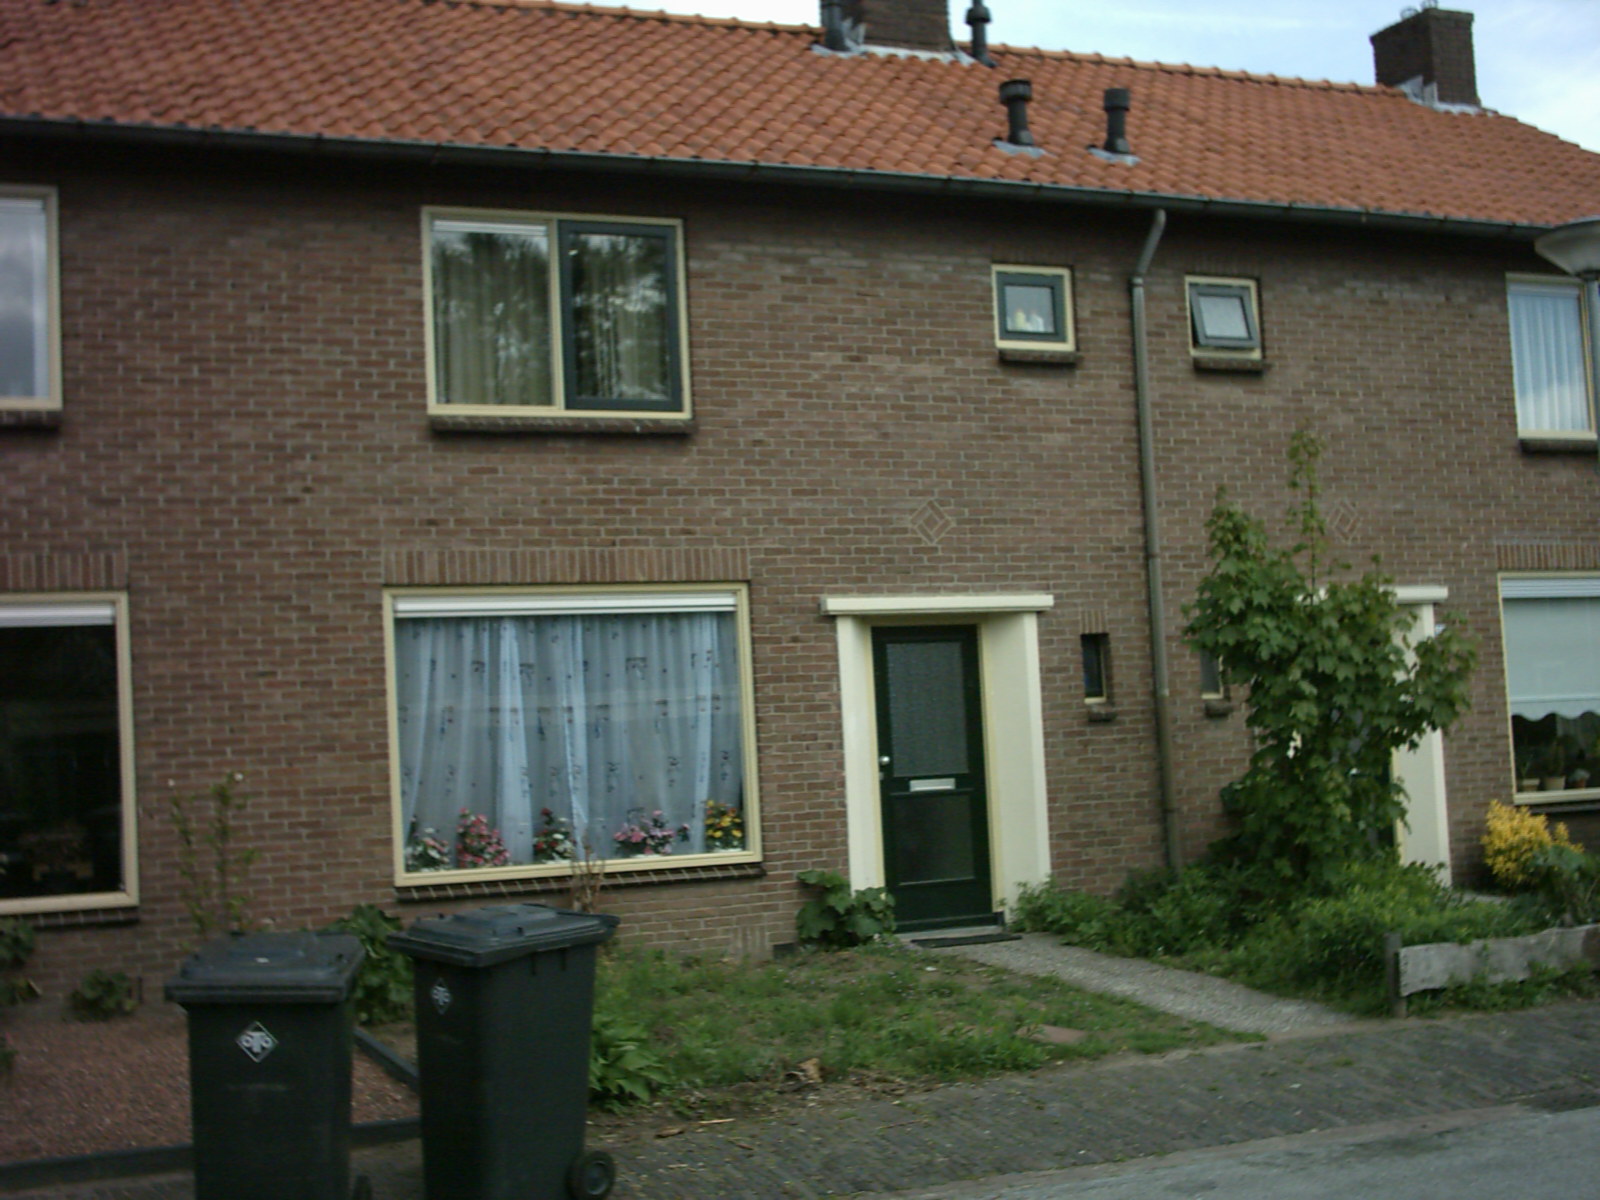 Meidoornstraat 27, 7213 WP Gorssel, Nederland